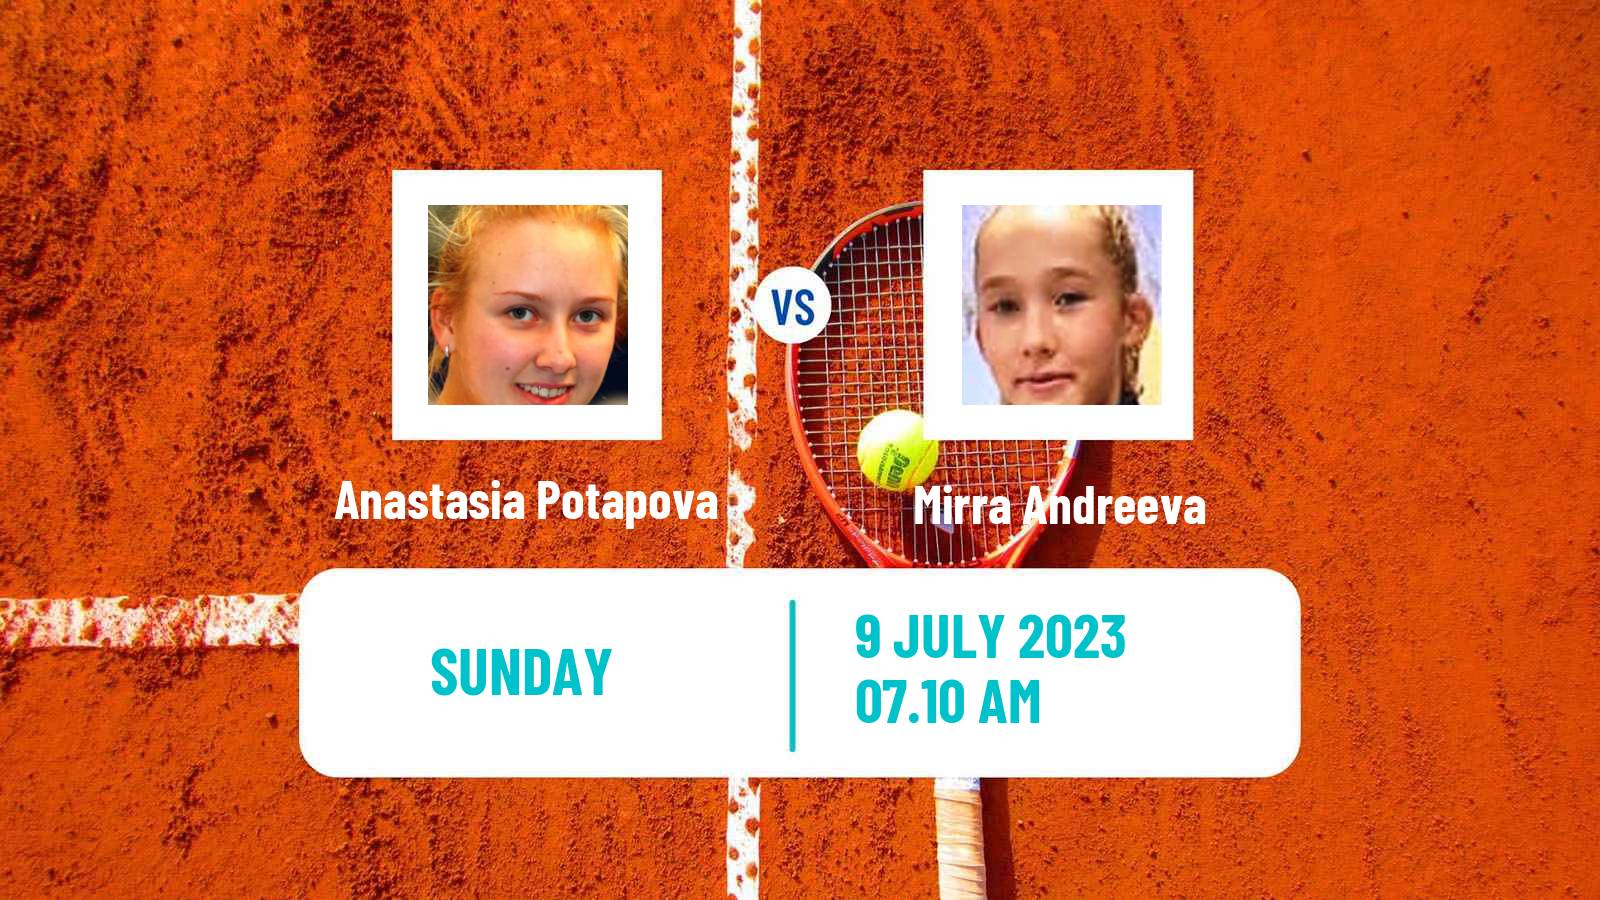 Tennis WTA Wimbledon Anastasia Potapova - Mirra Andreeva